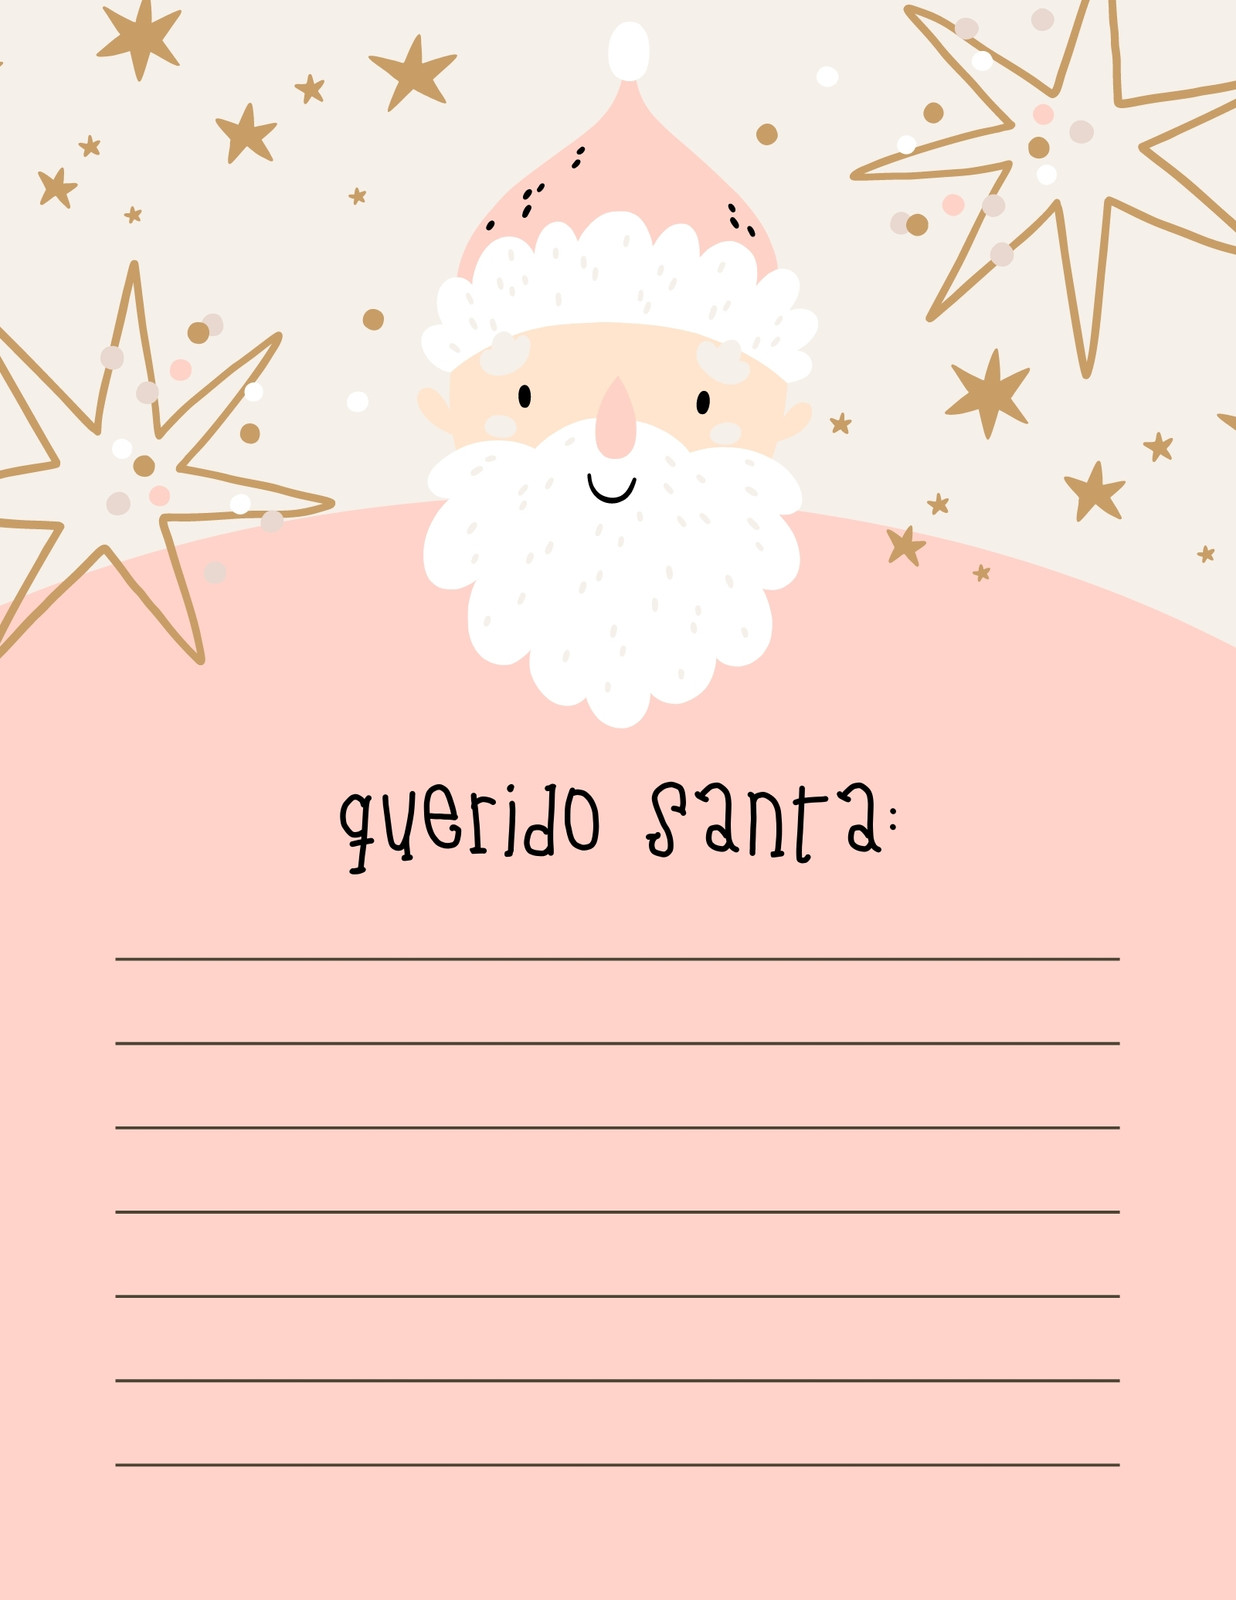 Carta Santa Claus Bonito Rosa Pastel y Dorado